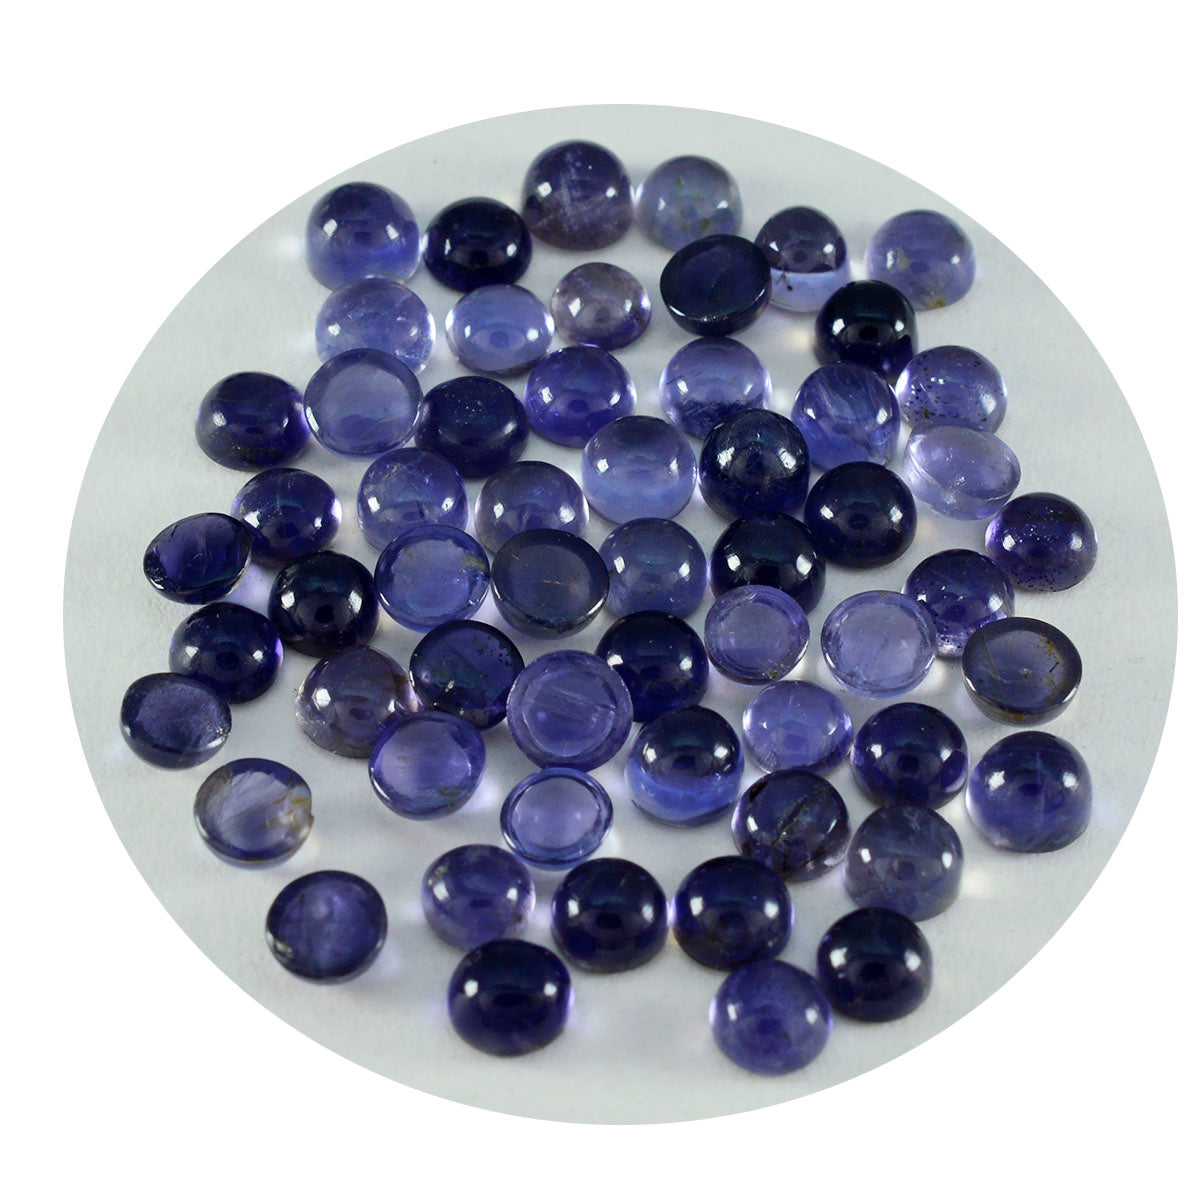 Riyogems 1 Stück blauer Iolith-Cabochon, 3 x 3 mm, runde Form, süßer Qualitäts-Edelstein